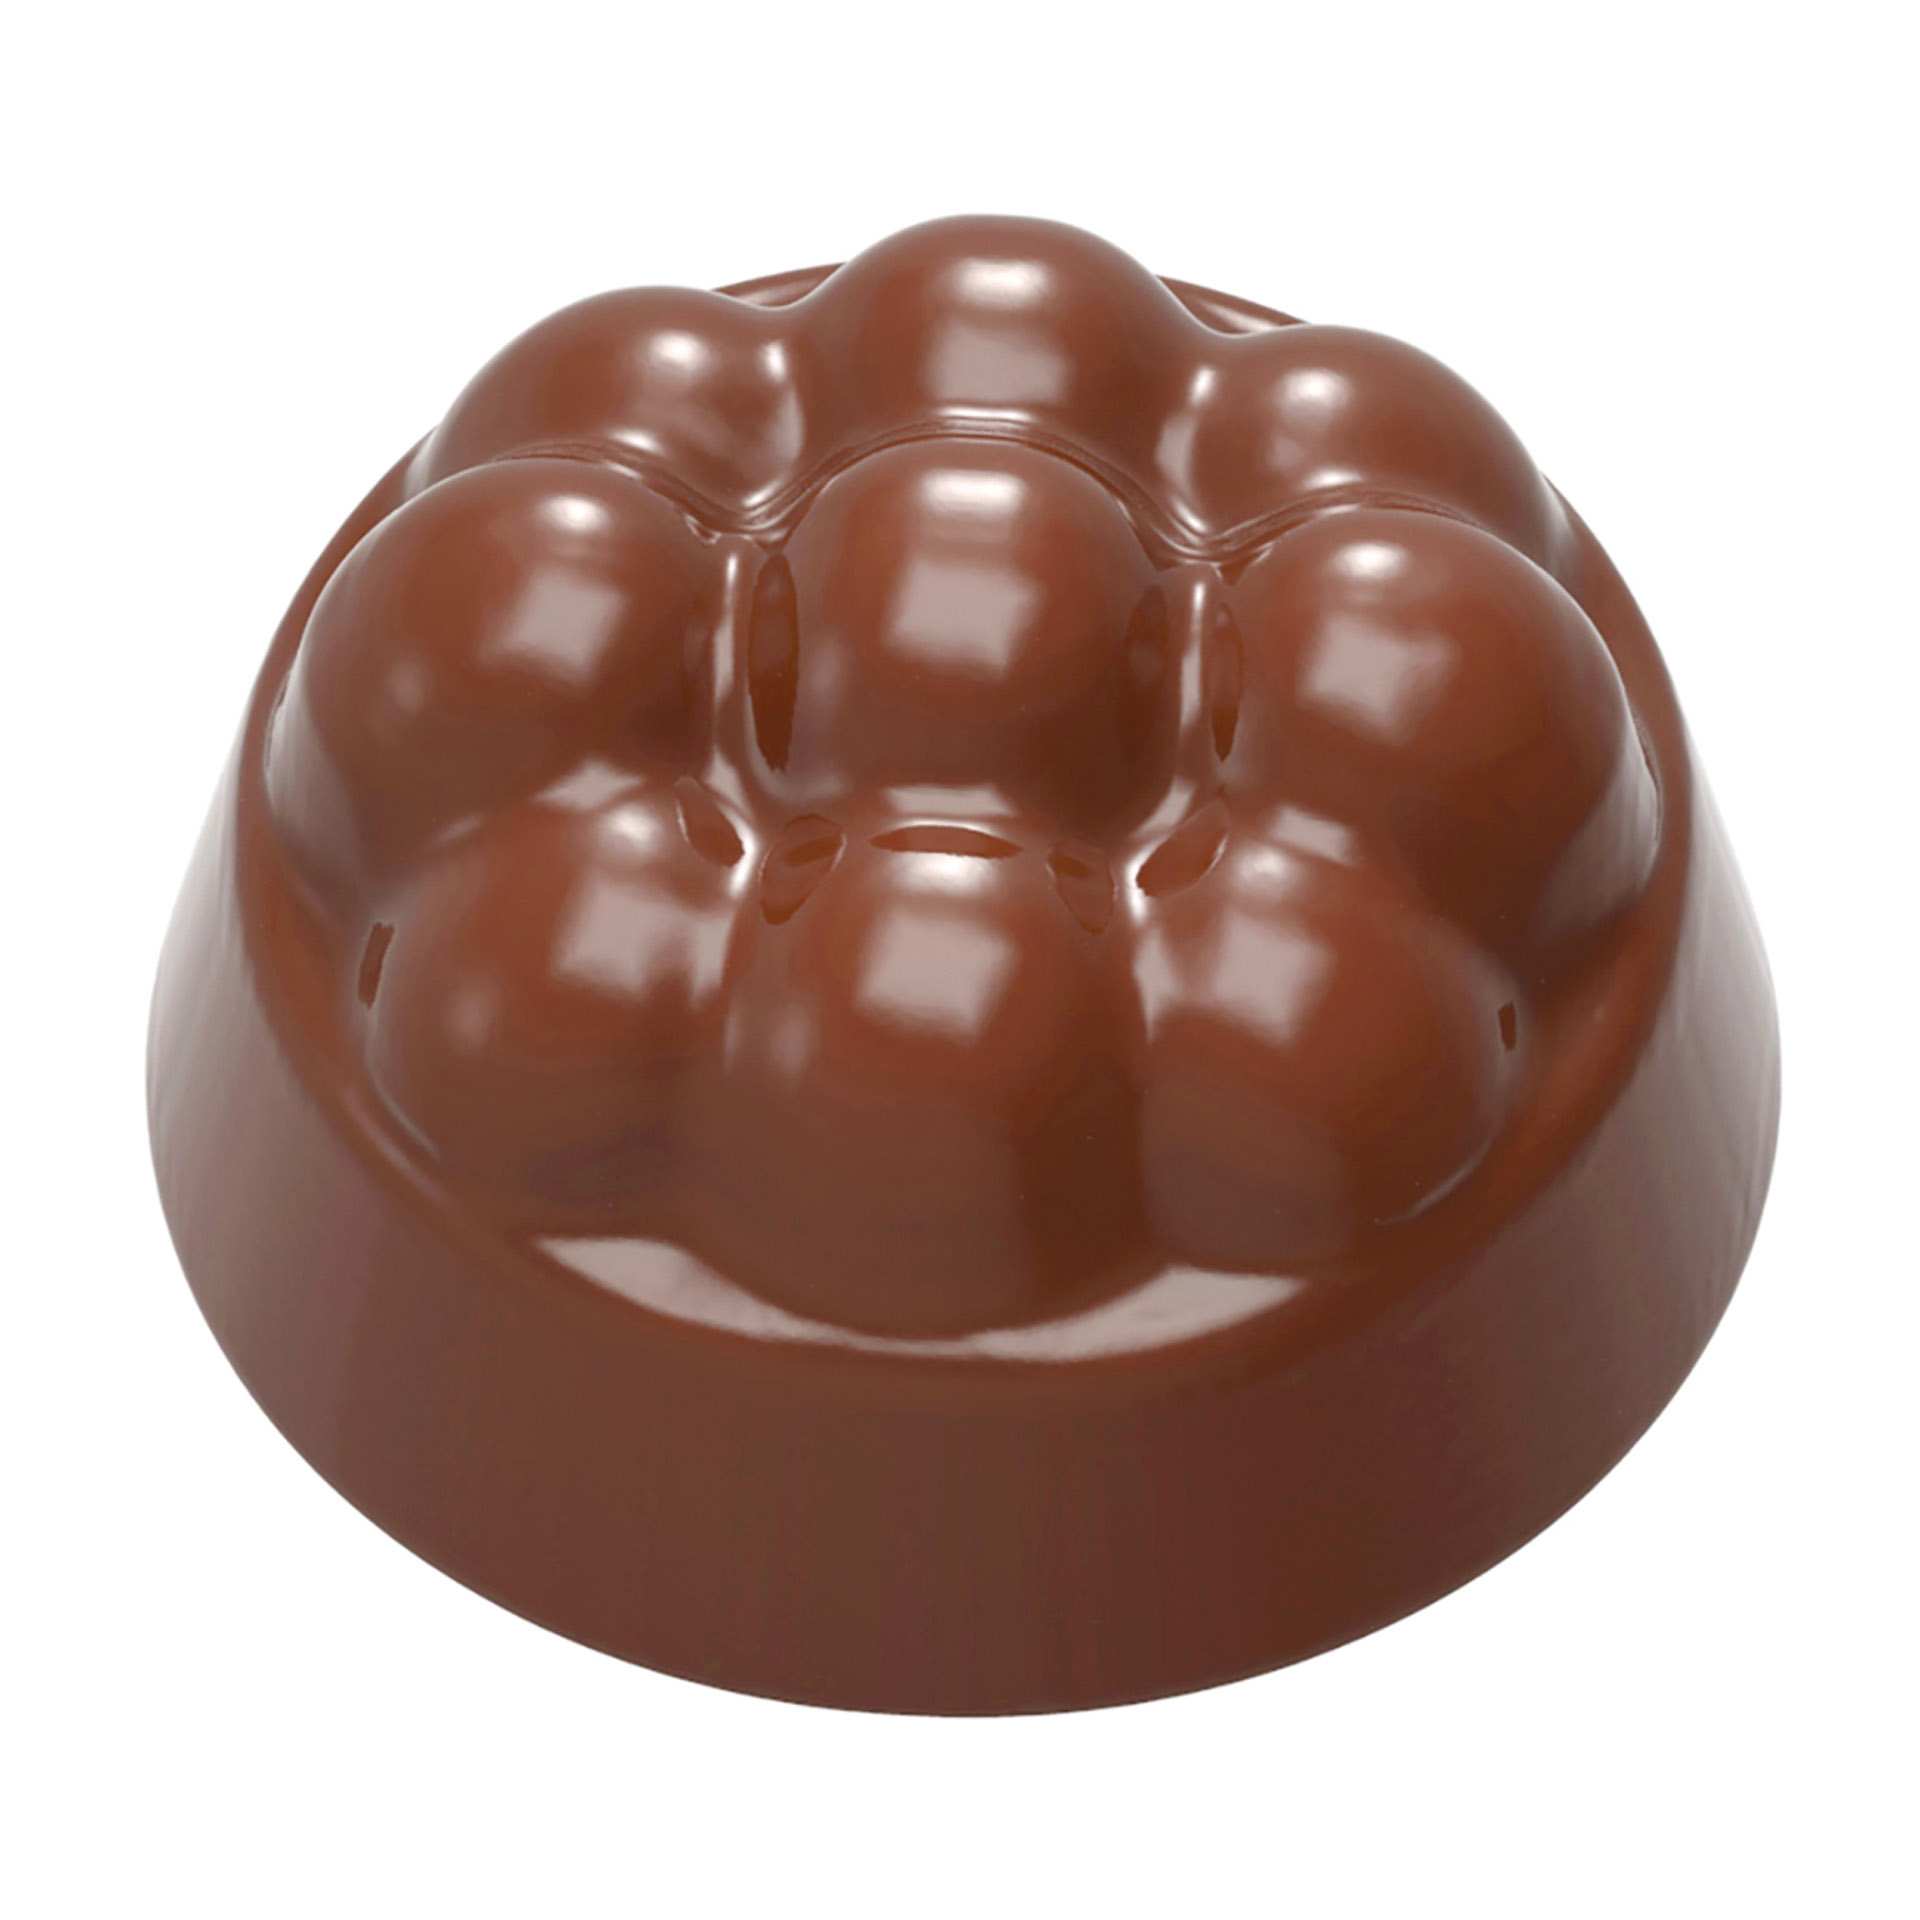 Schokoladen-Form - 9 Kugeln - Abm. 27,5 x 17,5 x 2,4 cm - Polycarbonat - 422392-C